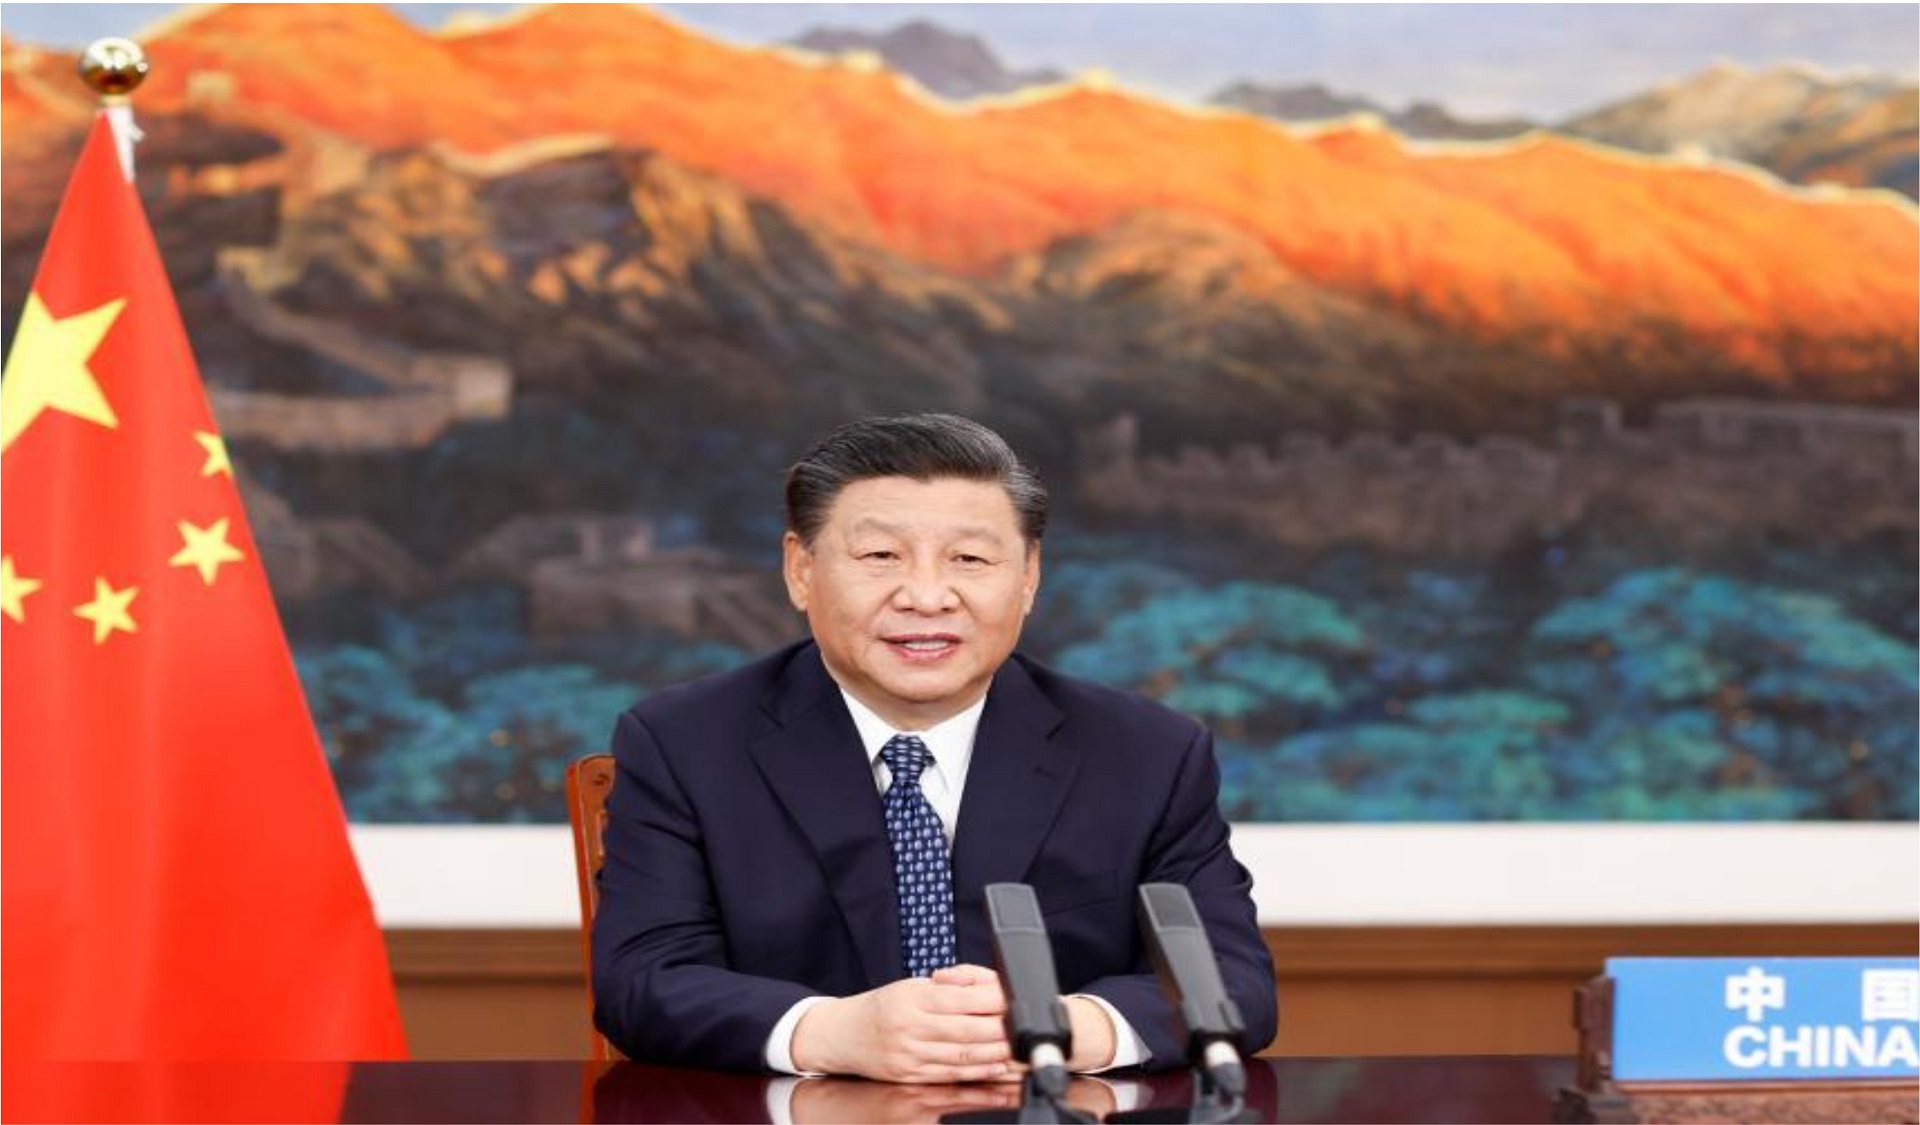 Xi Jinping interprète l’homme de Davos